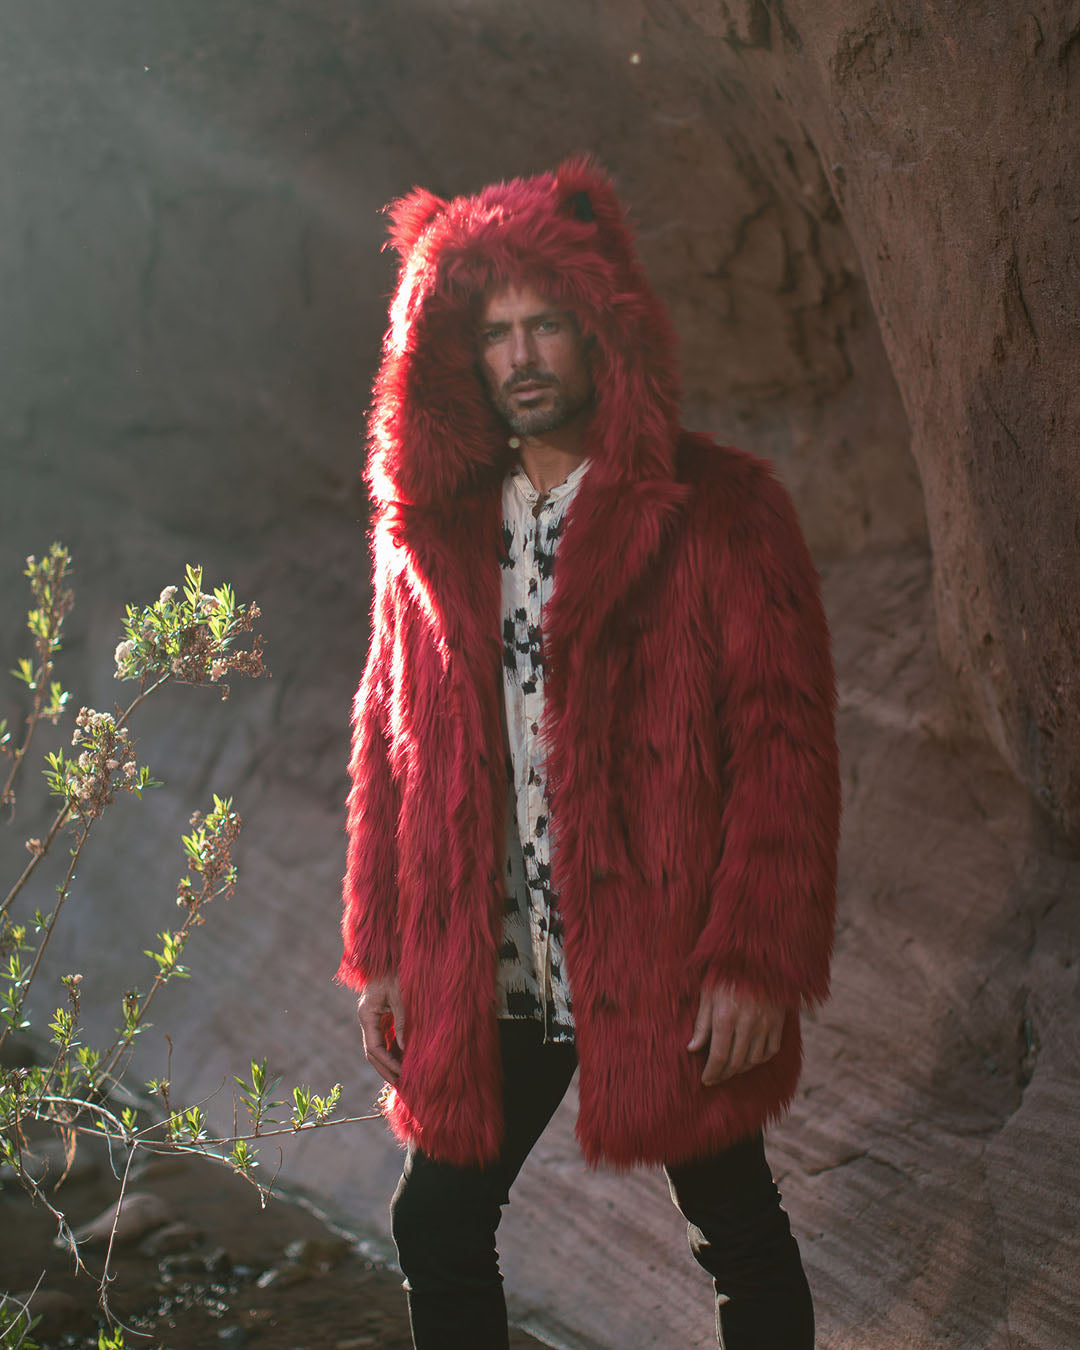 Wolf Men's Classic Faux Fur Coat